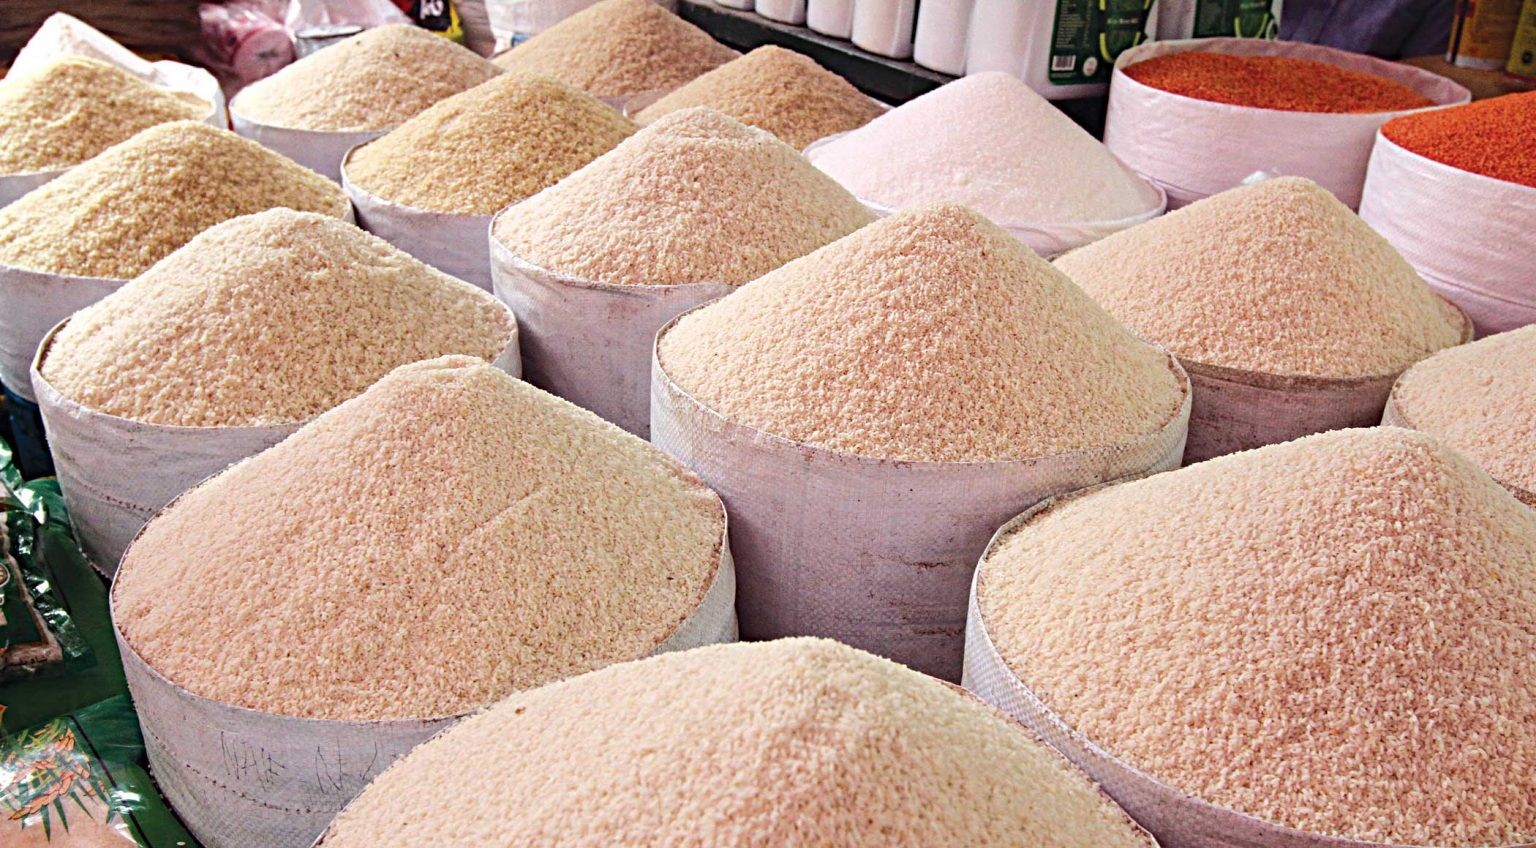 Ấn Độ đột ngột cấm xuất khẩu tấm, Việt Nam có thể hưởng lợi nhờ giá gạo tăng - Ảnh 1.